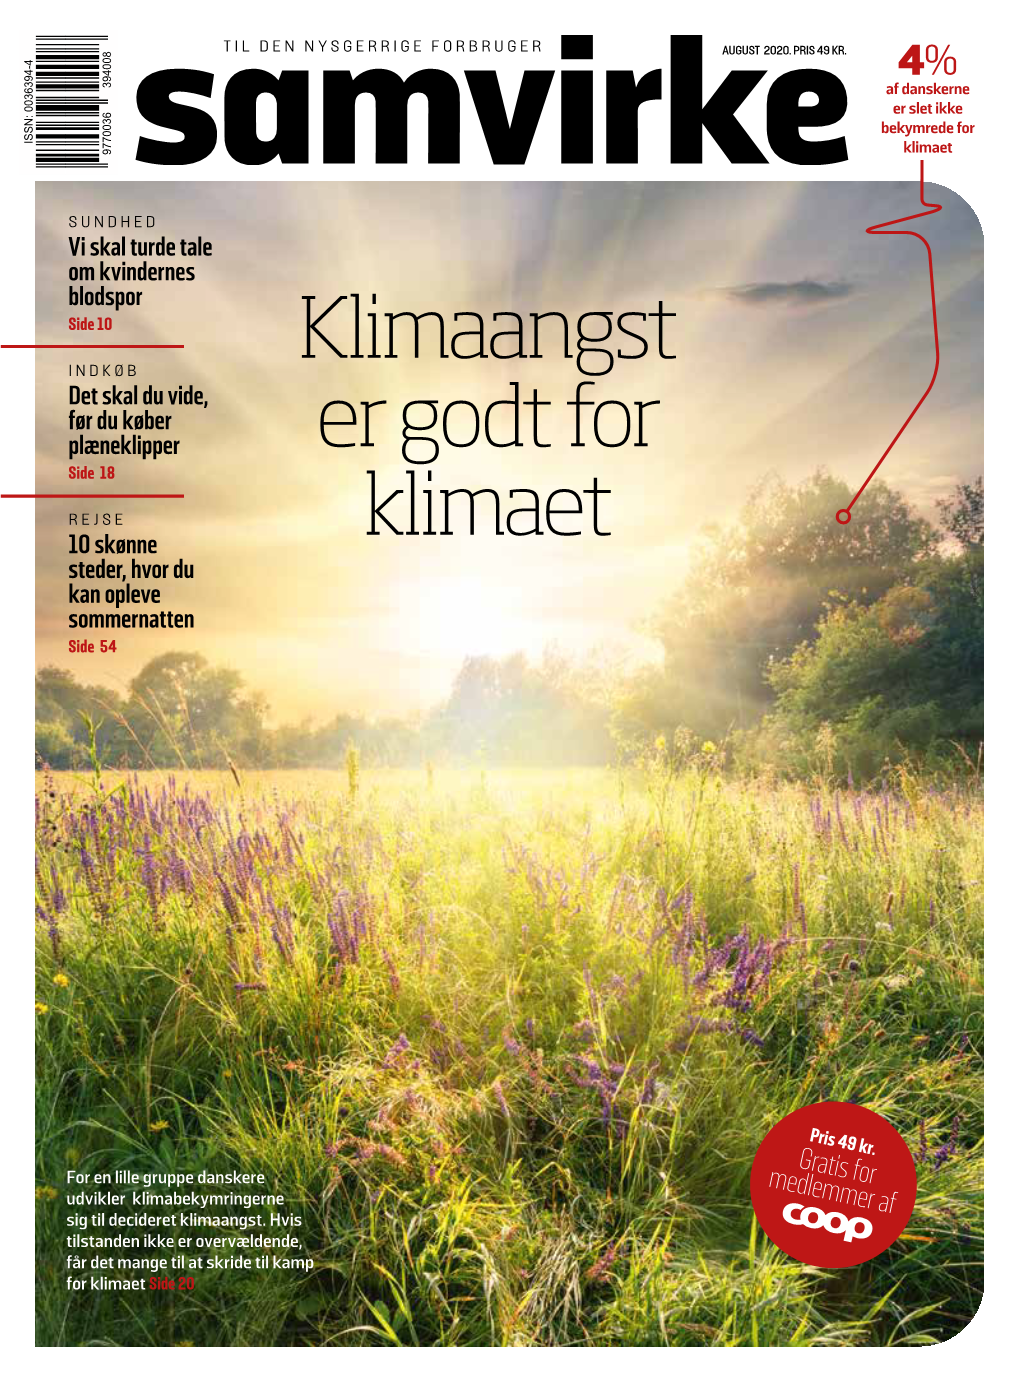 Klimaangst Er Godt for Klimaet for En Lille Gruppe Danskere Kan Klimabekymringerne Udvikle Sig Til Klimaangst